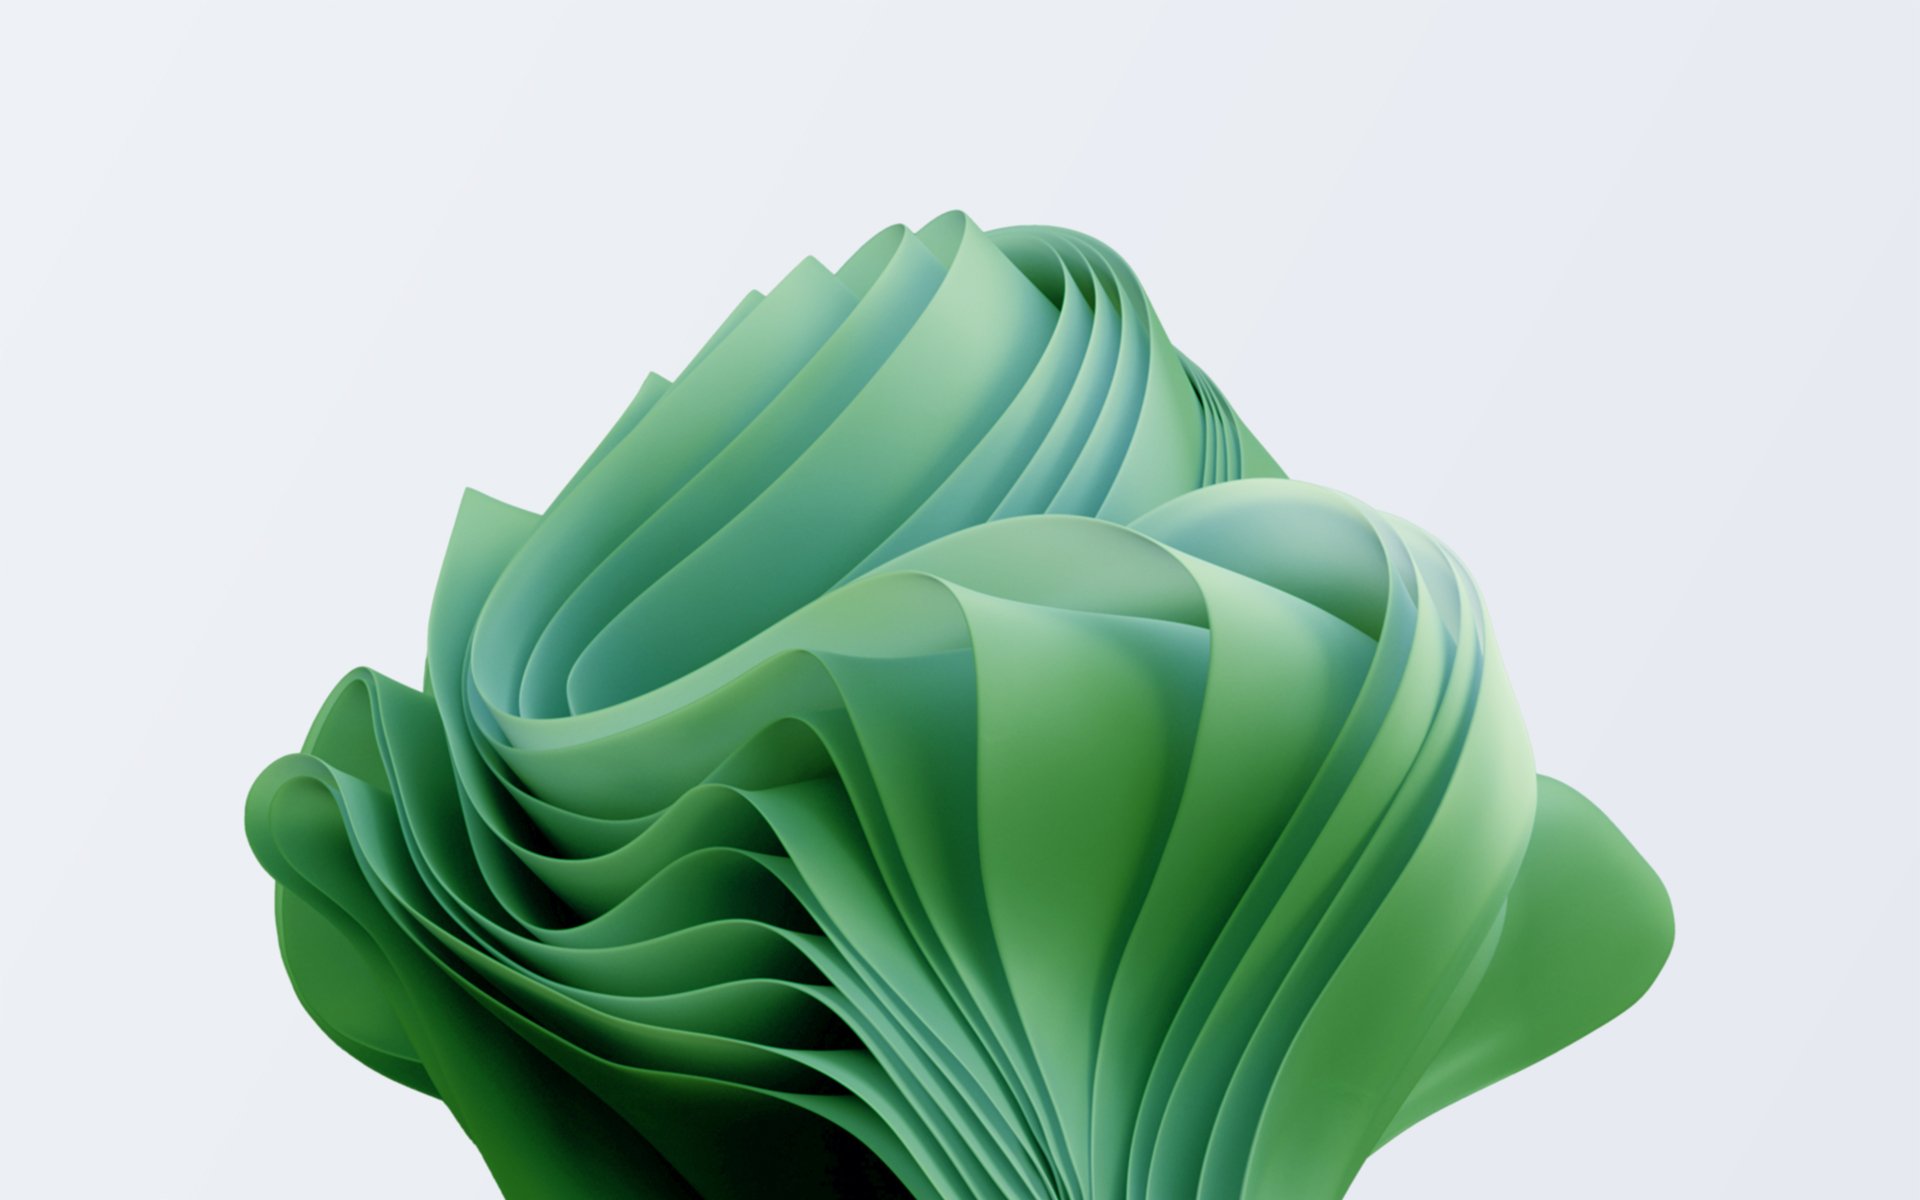 Hãy thử một phong cách tươi mới với bộ sưu tập hình nền Windows Green Wallpaper. Hình ảnh tươi sáng, đầy năng lượng này sẽ giúp bạn cảm thấy sảng khoái và tinh tấn hơn khi làm việc trên màn hình.